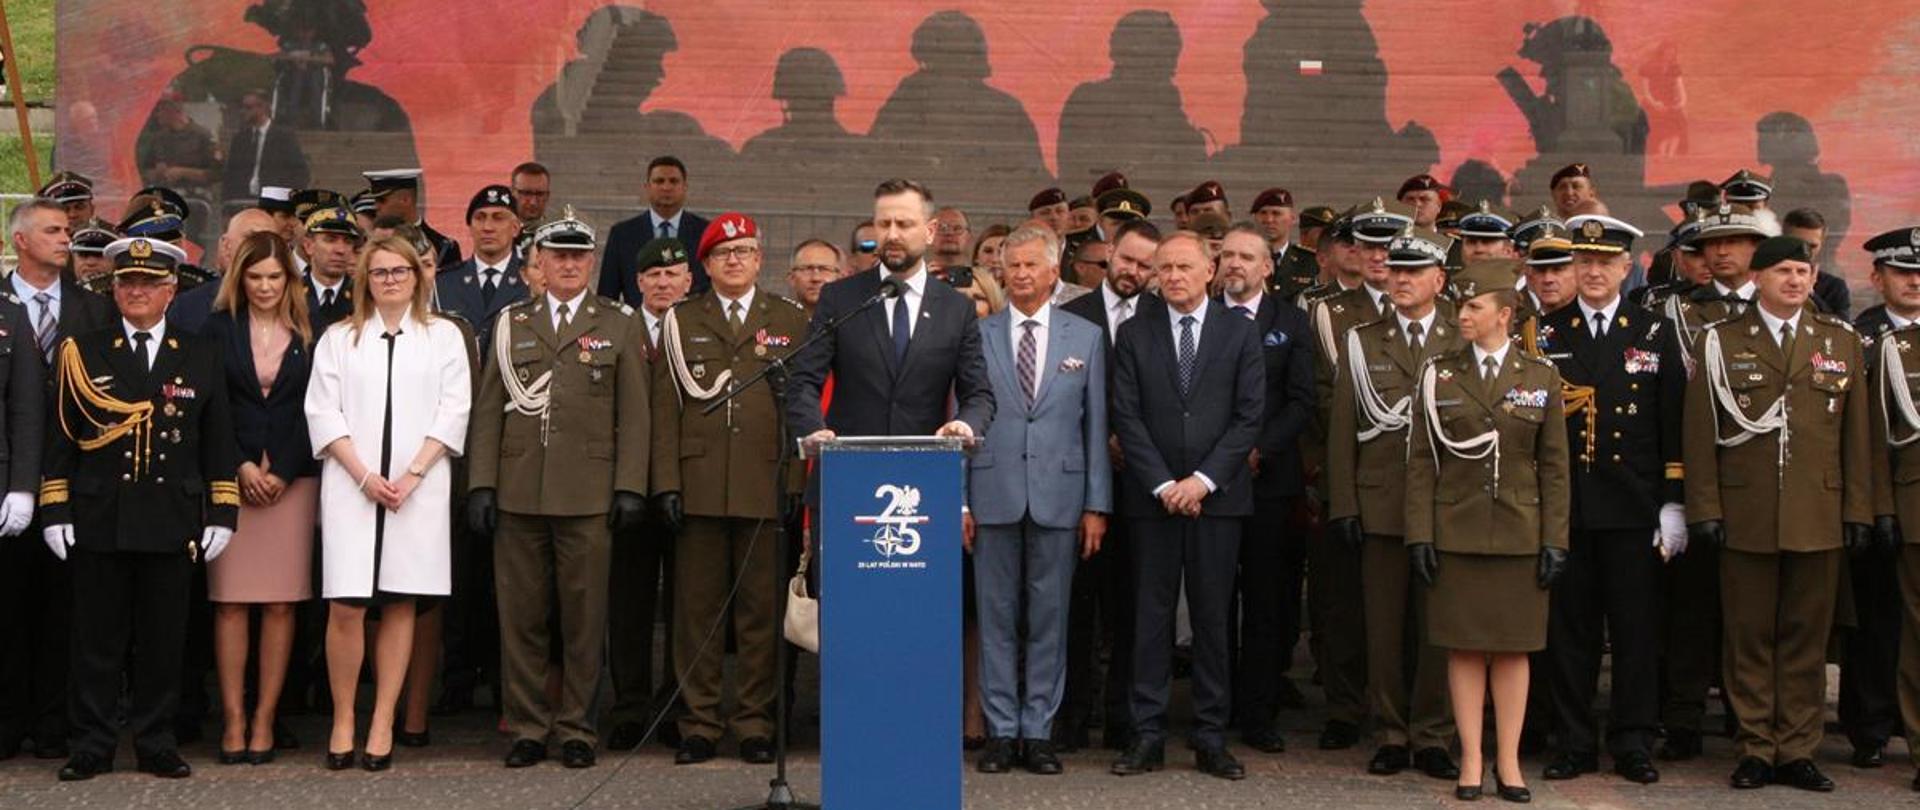 Na zdjęciu widać zaproszonych gości podczas przemówienia ministra ON. W tle biało czerwona flaga z napisem Dzień Weterana